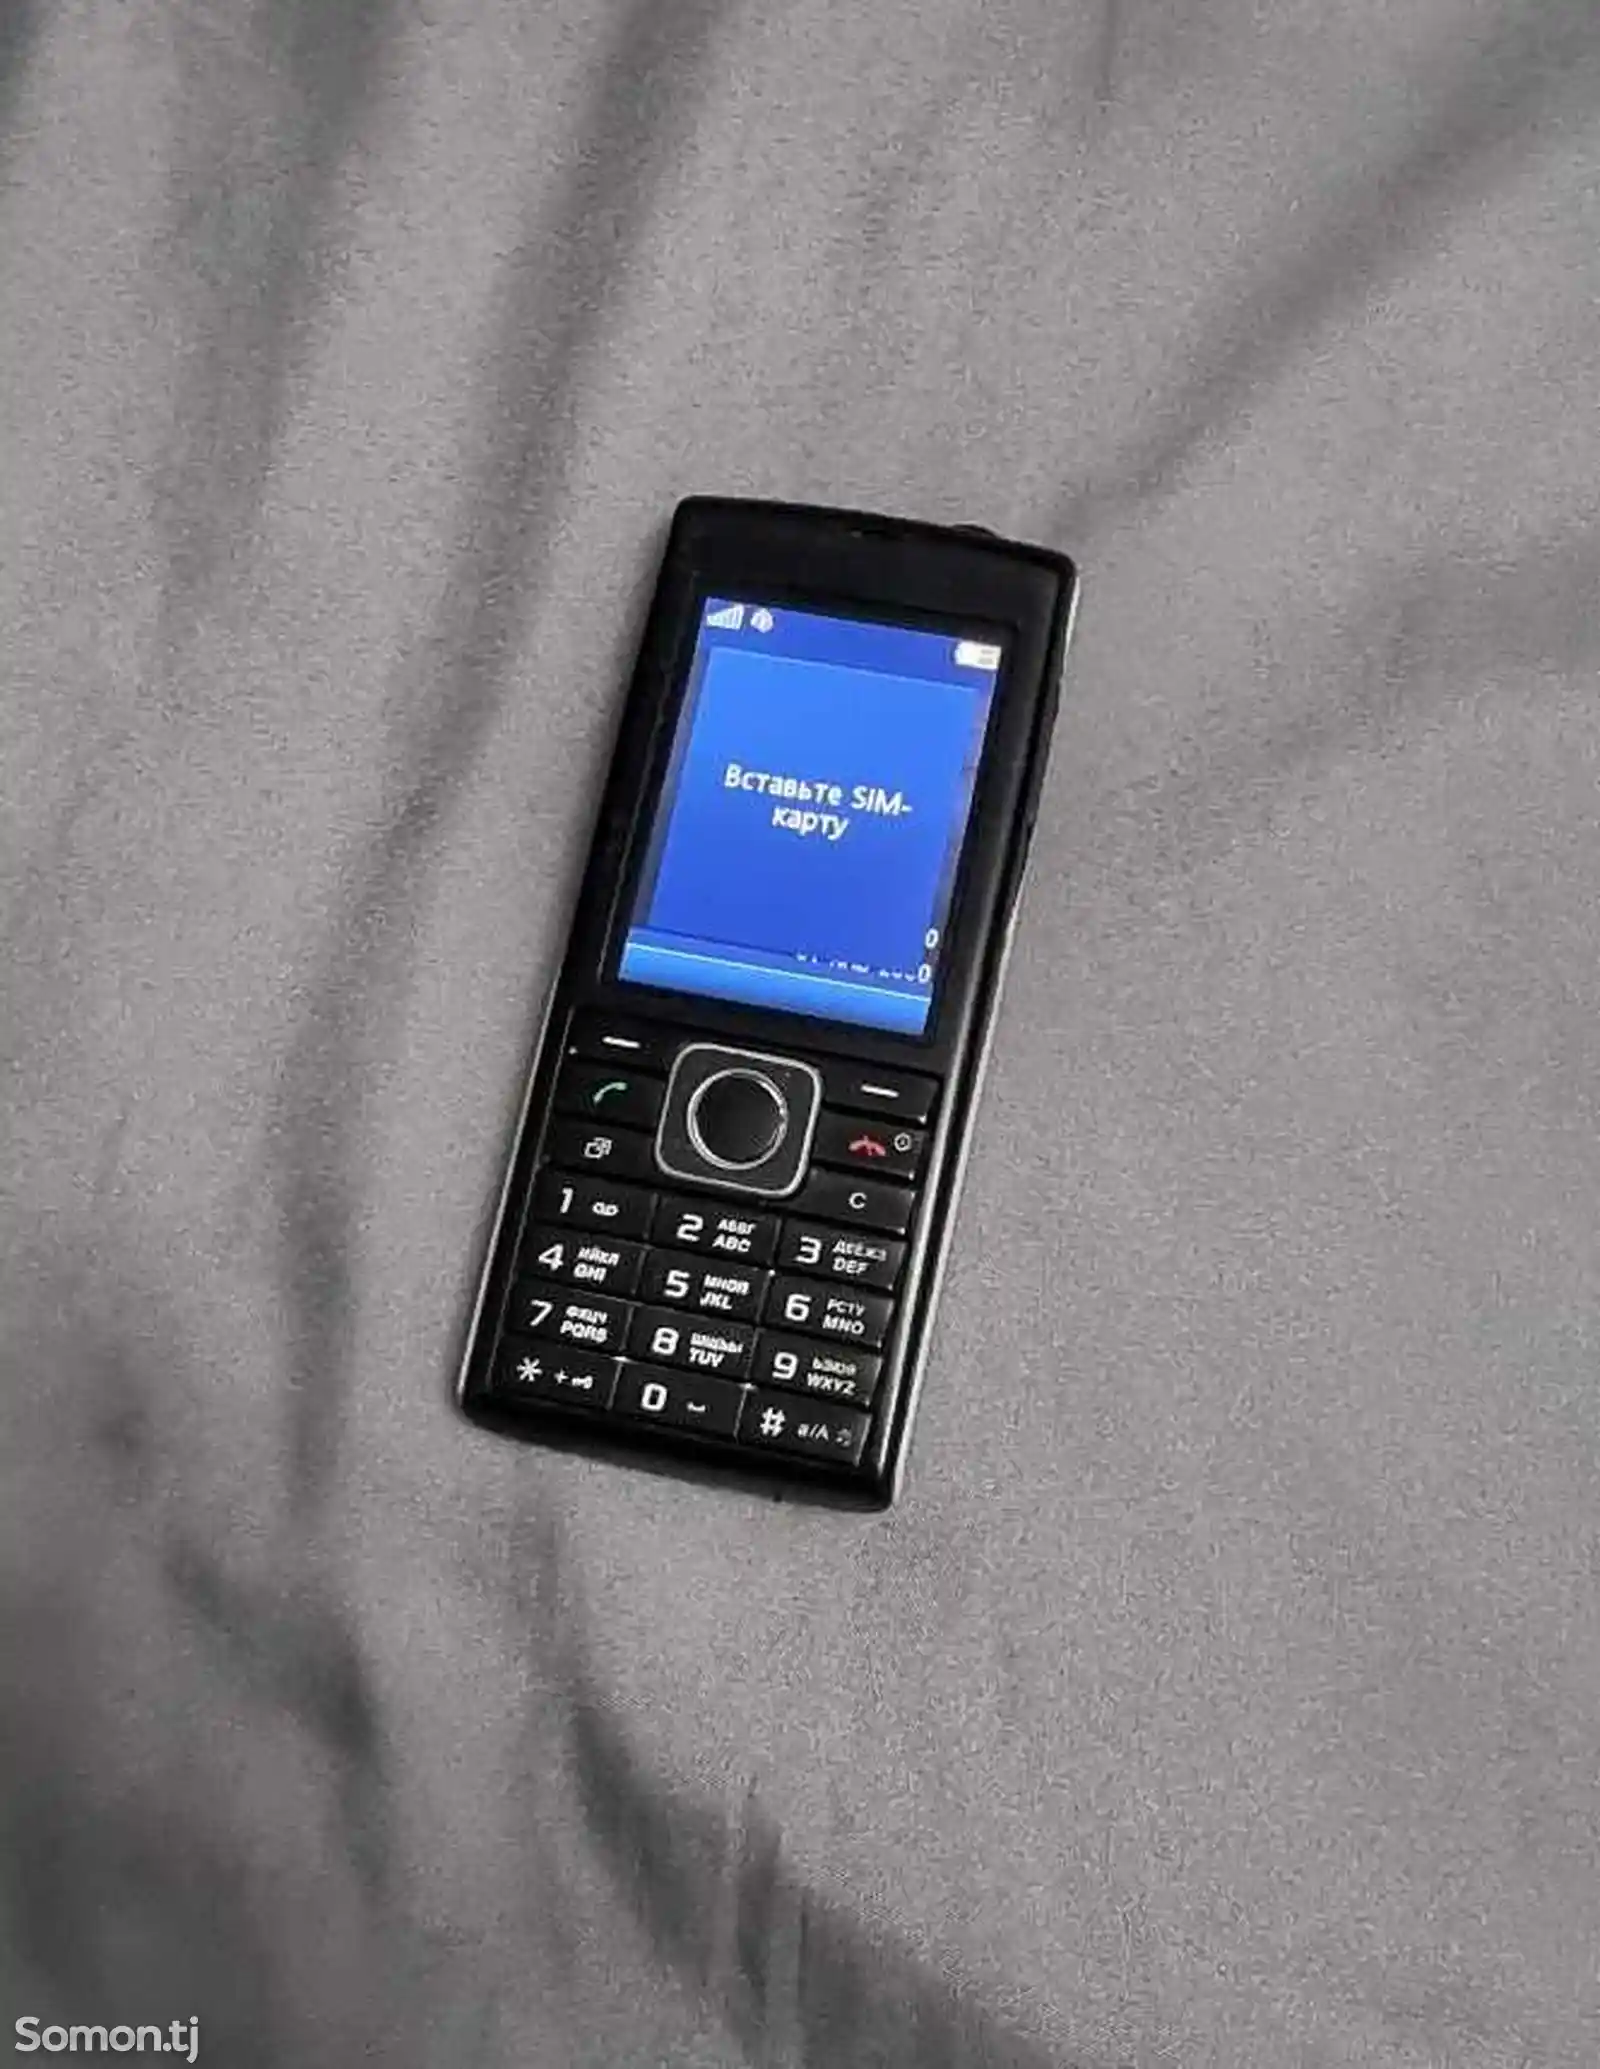 Sony Ericsson J108